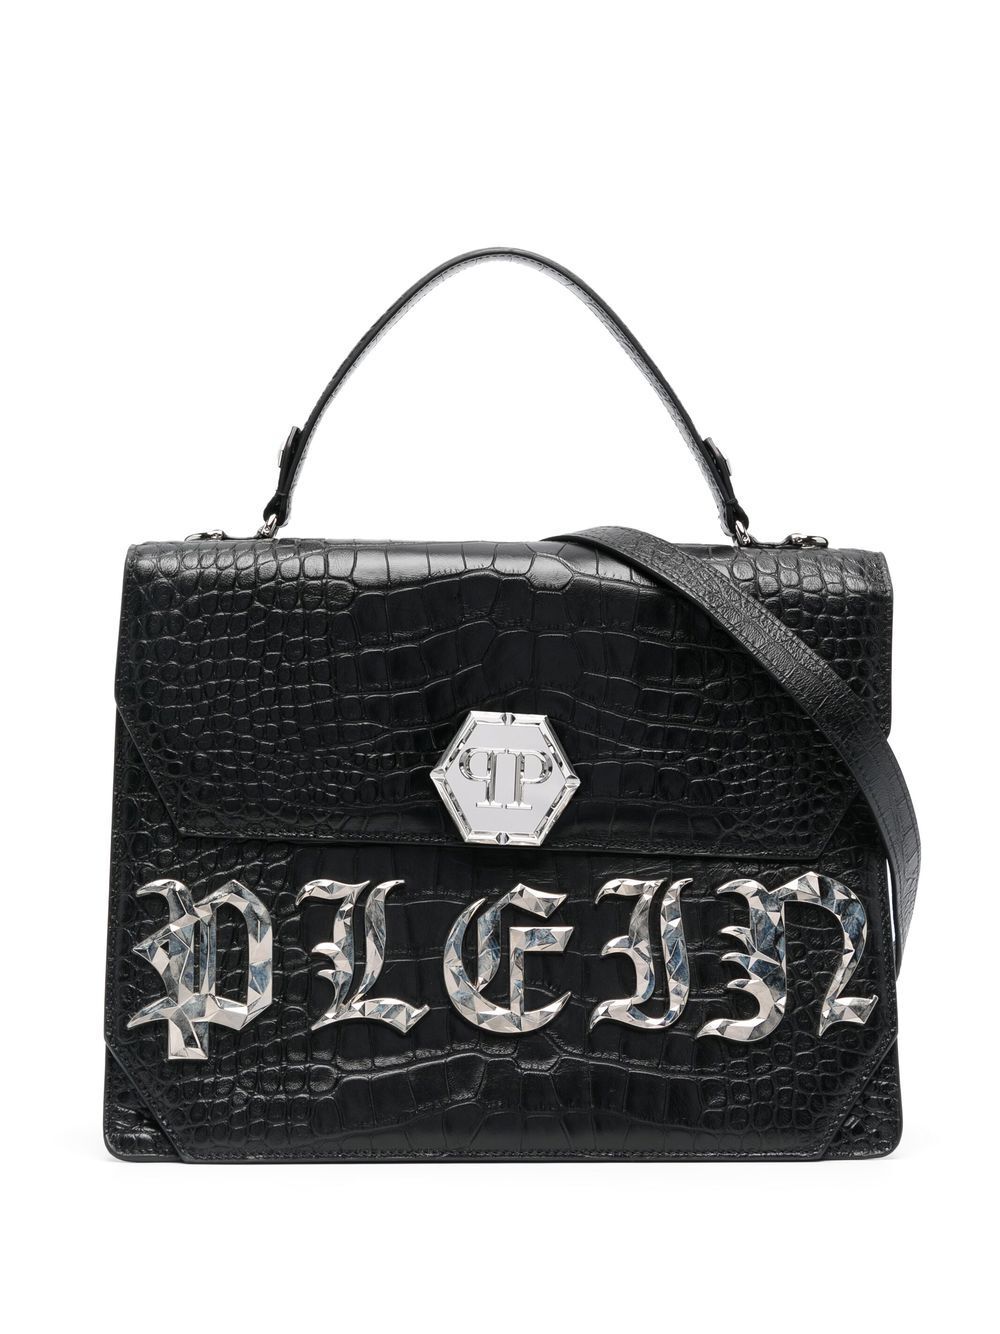 Philipp Plein Gothic Plein leather tote bag - Black